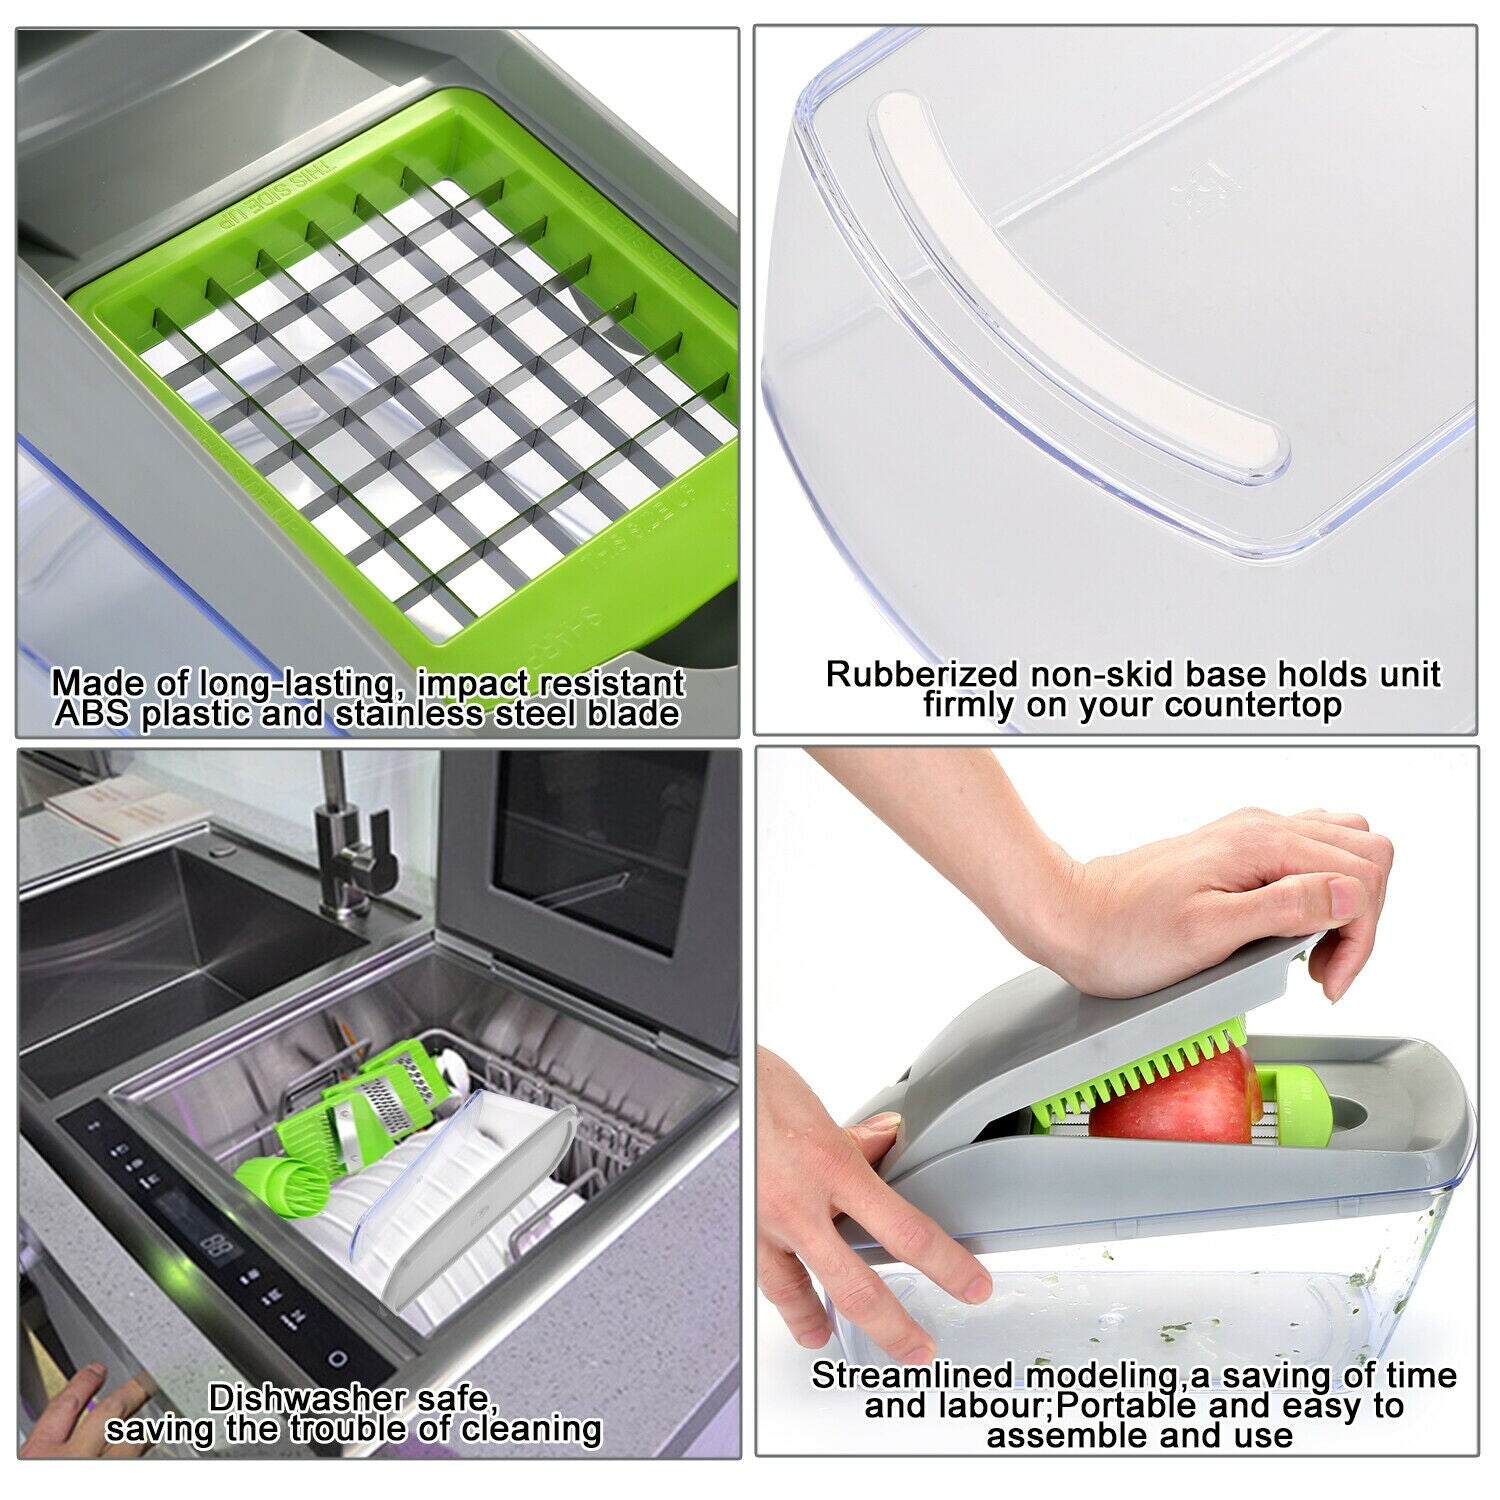 13/14Pcs Vegetable Slicer Dicer Food Fruit Chopper Kitchen Cutter Tools  On Sale Bed Bath  Beyond 32603914